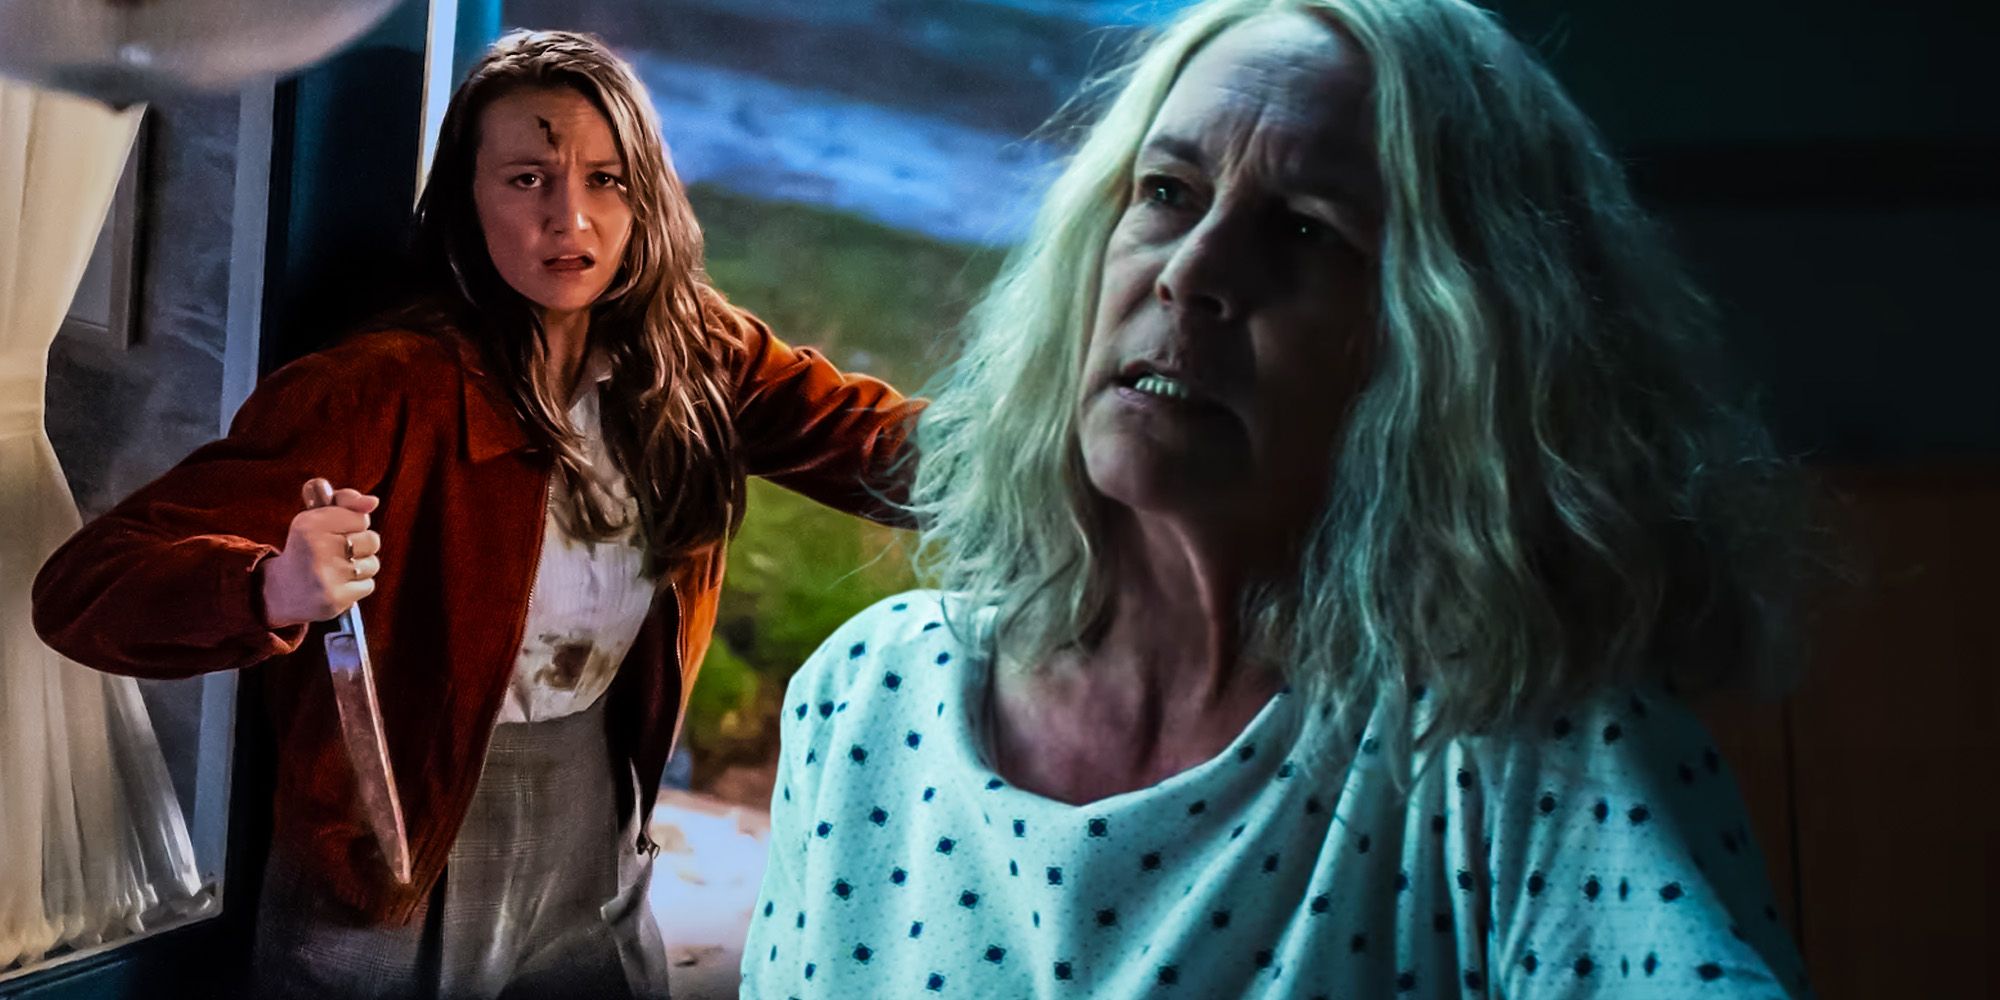 Teoría: El final de Halloween de Carpenter revela que Allyson mata a Laurie